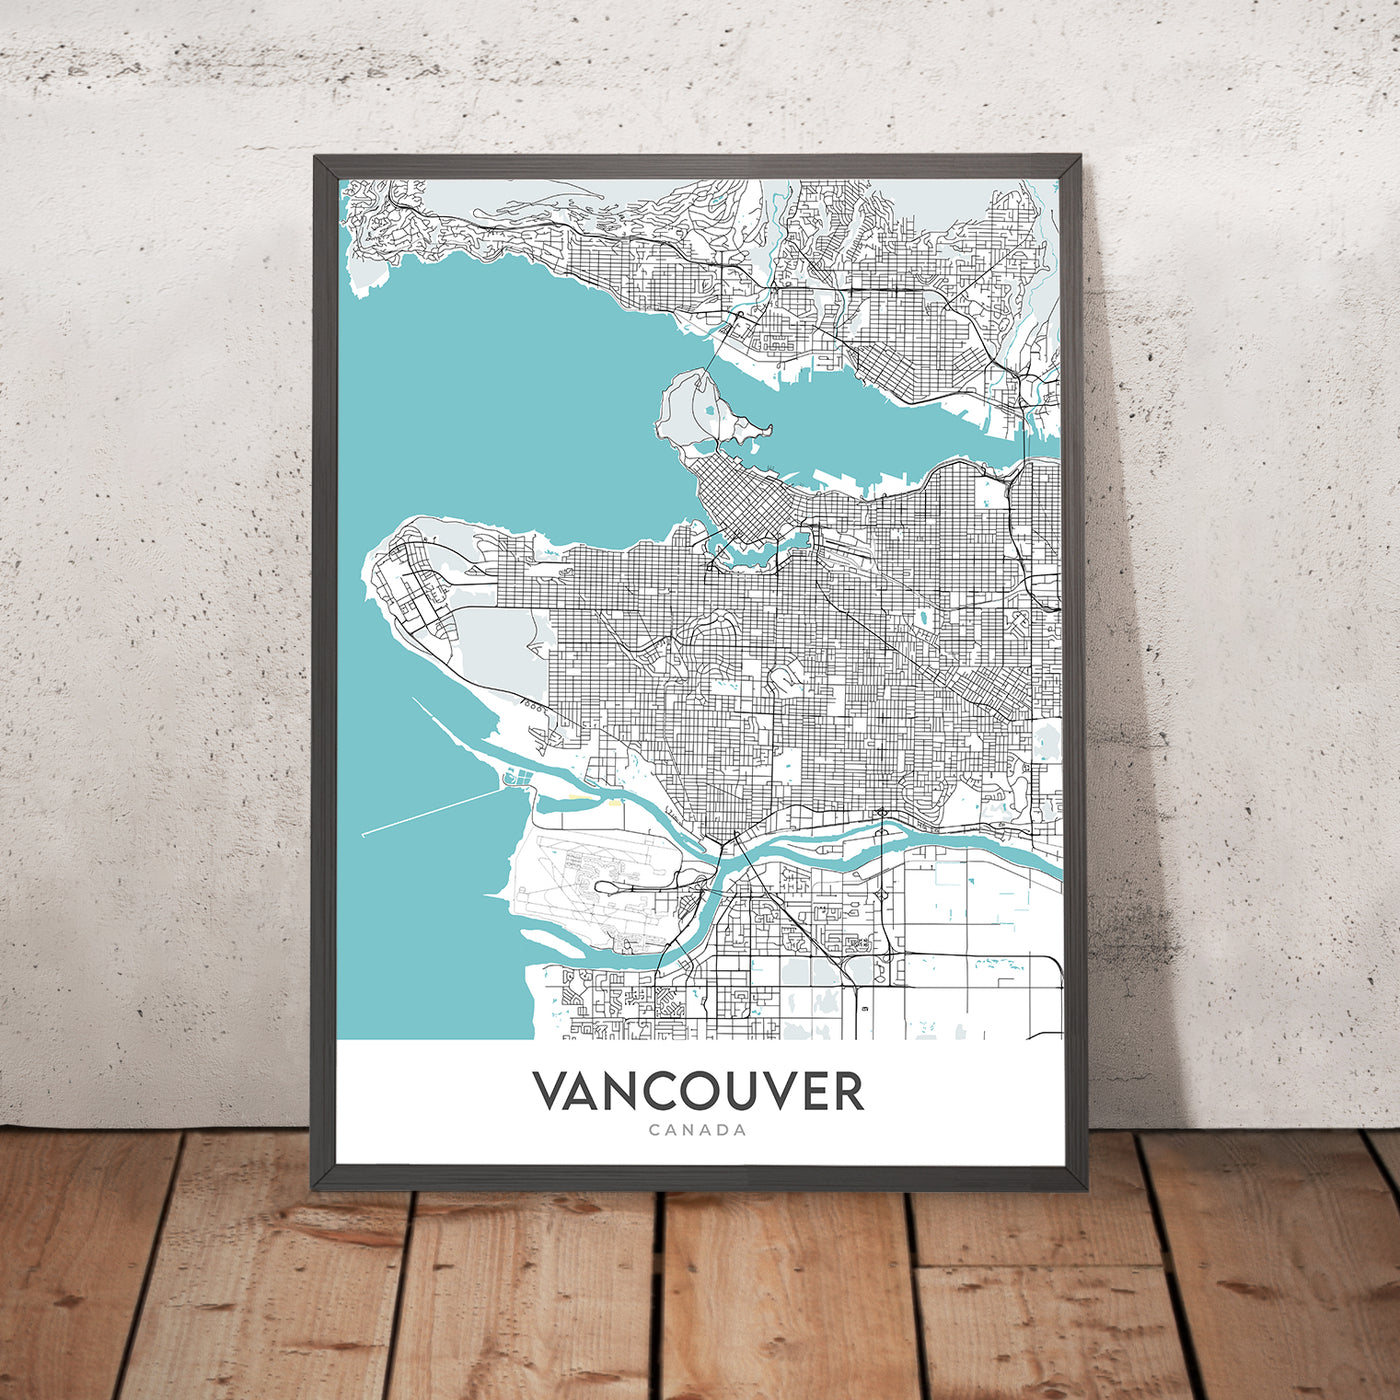 Moderner Stadtplan von Vancouver, Kanada: Innenstadt, Stanley Park, Granville St, Gastown, BC Place